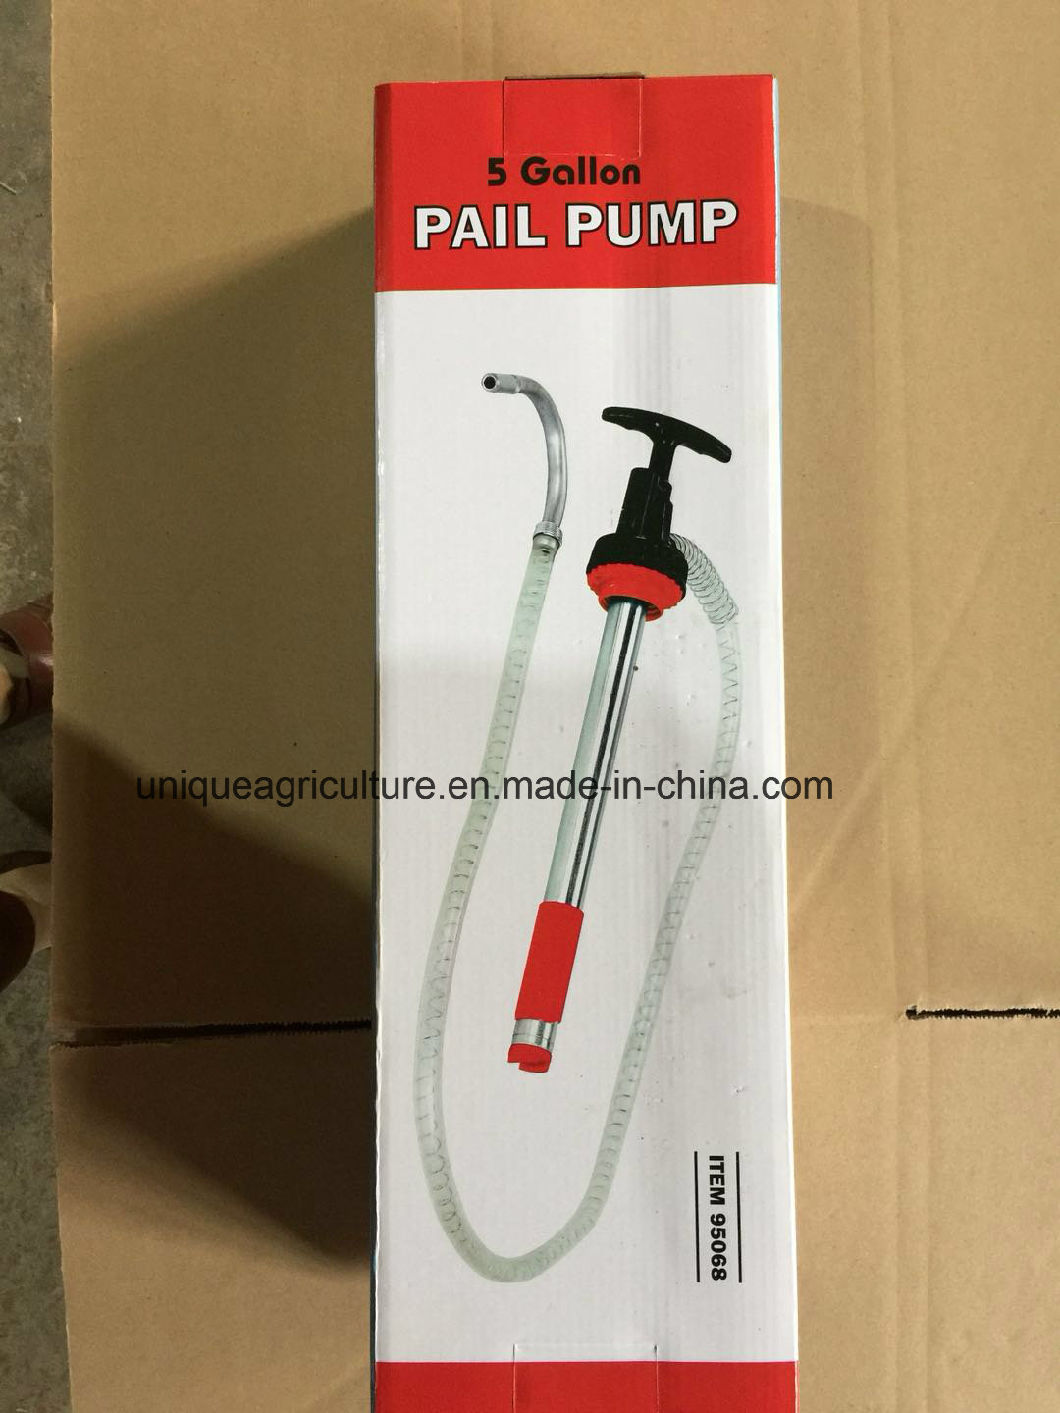 60ml Gear Oil Hand Pump 5 Gallon Manual Pail Pump